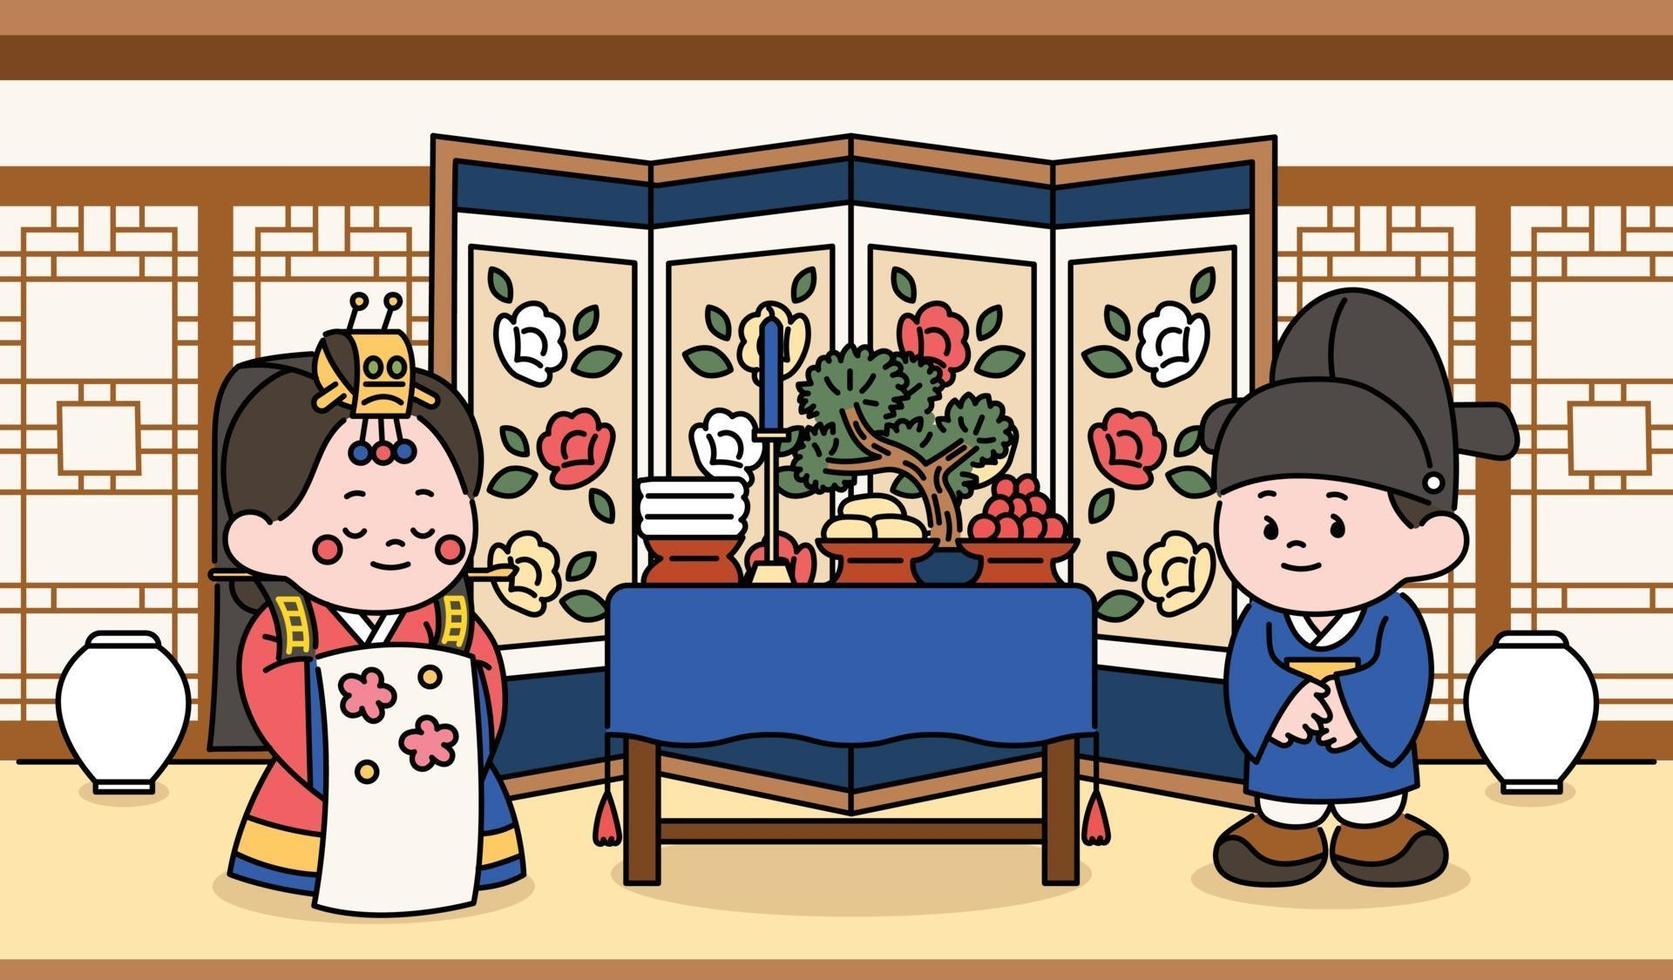 bruid en bruidegom karakters die een traditionele Koreaanse huwelijksceremonie vieren. hand getrokken stijl vector ontwerp illustraties.